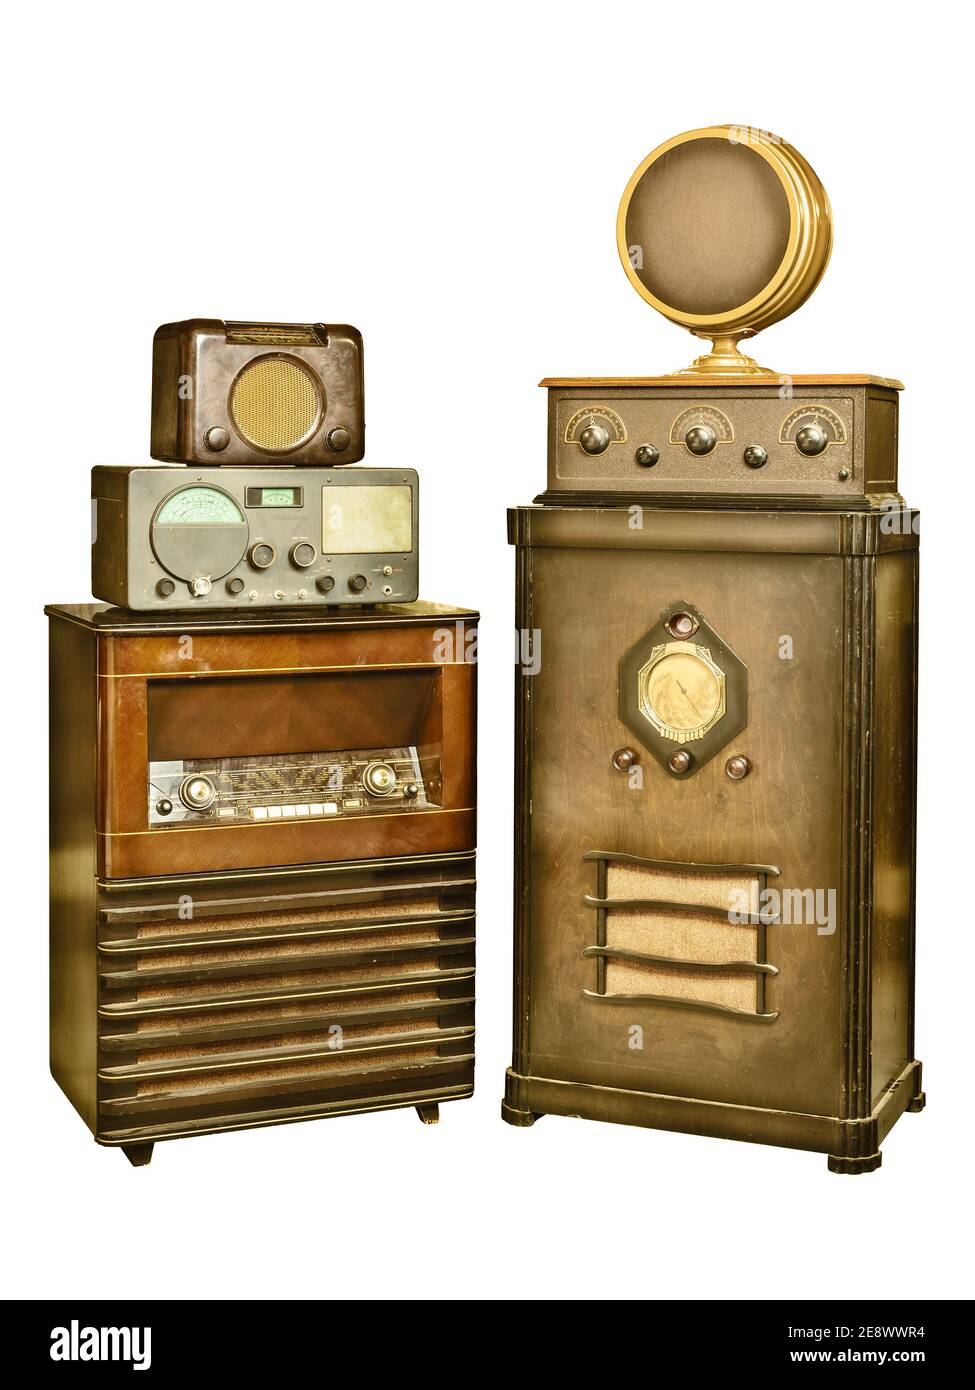 Image de style rétro d'un ensemble de radio vintage isolé sur fond blanc Banque D'Images